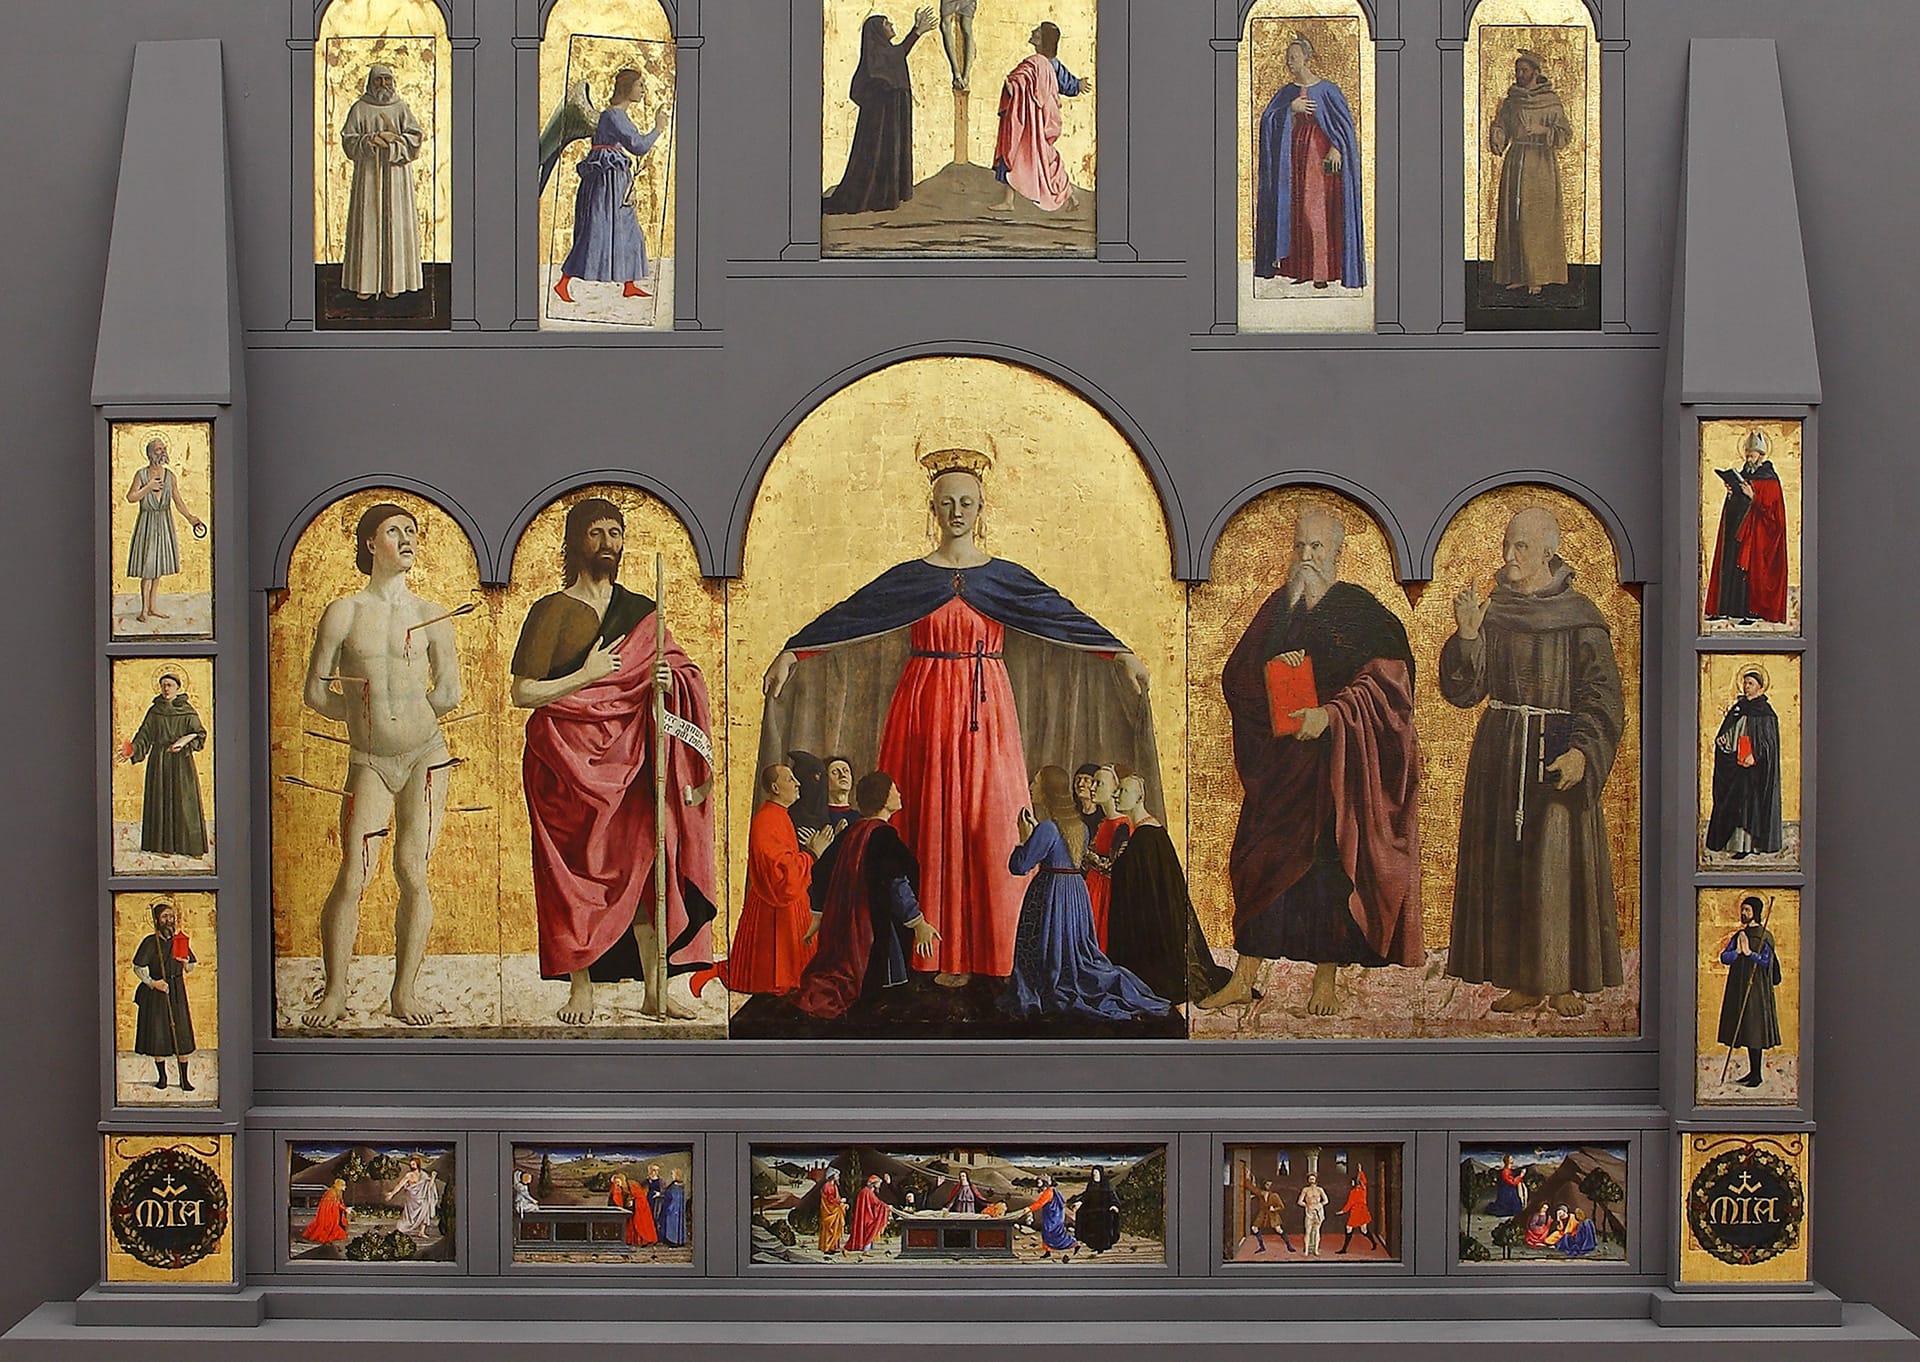 Guided tour to the native land of Piero della Francesca